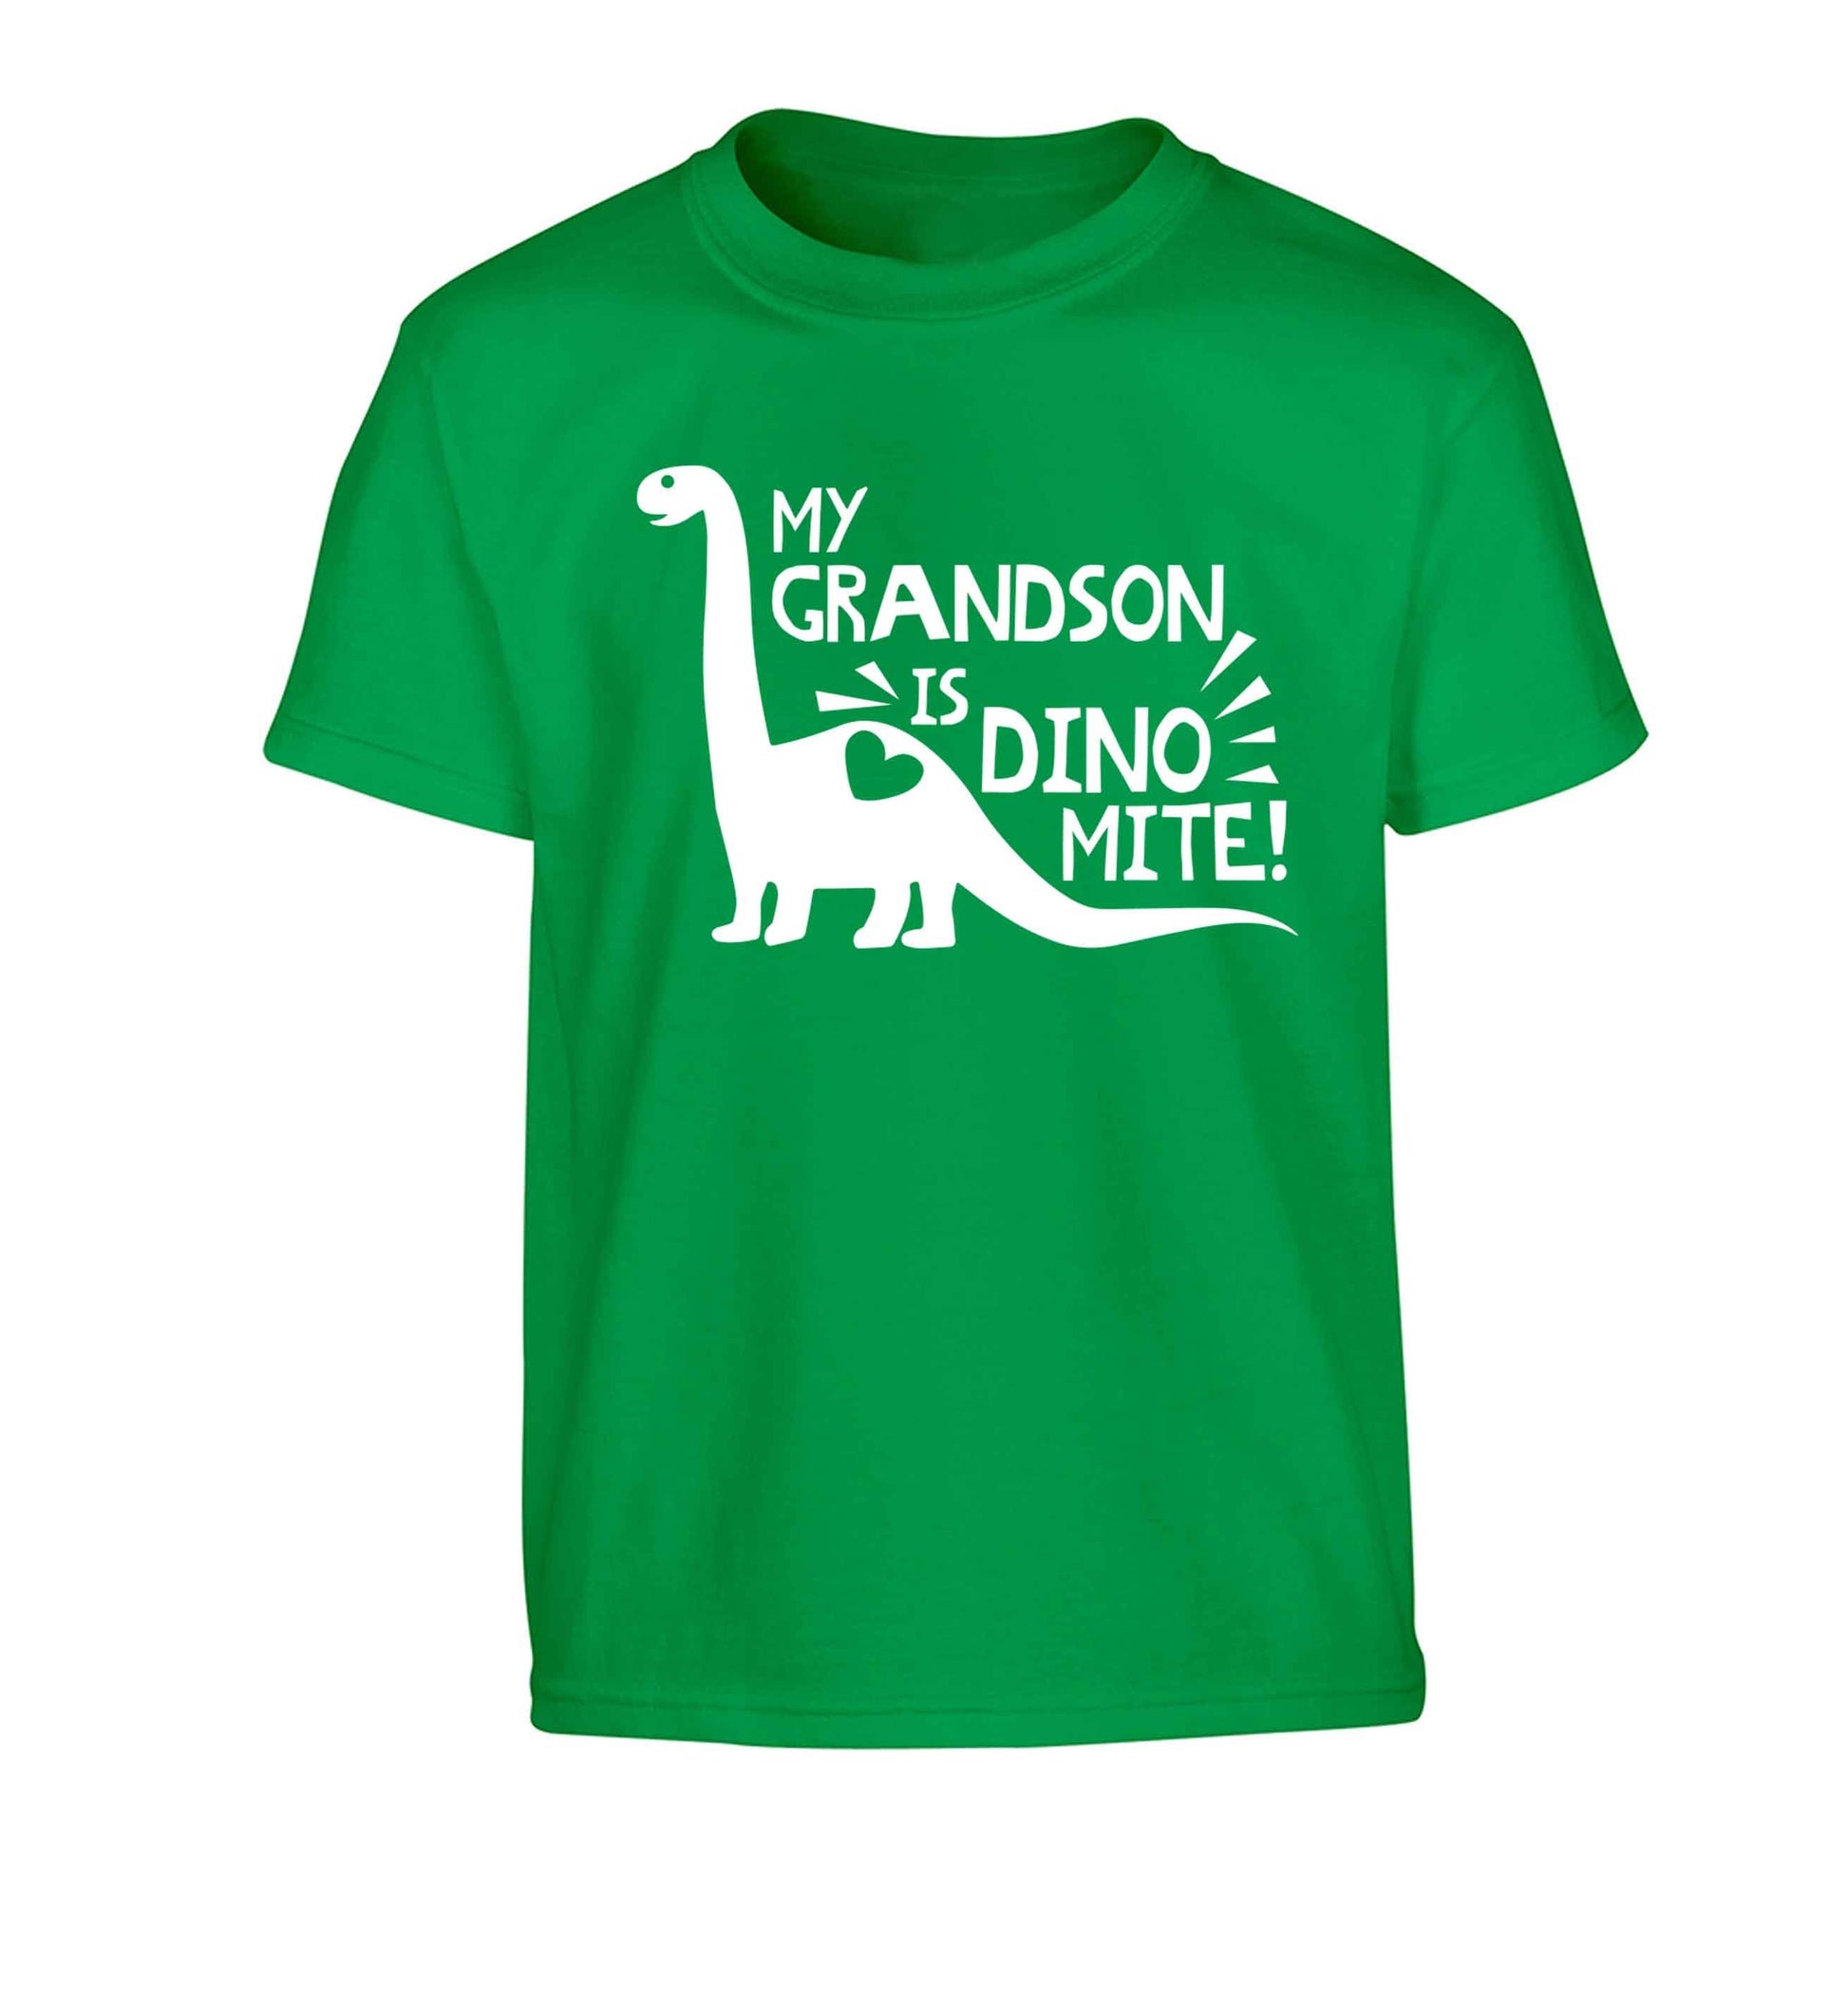 My grandson is dinomite! Children's green Tshirt 12-13 Years